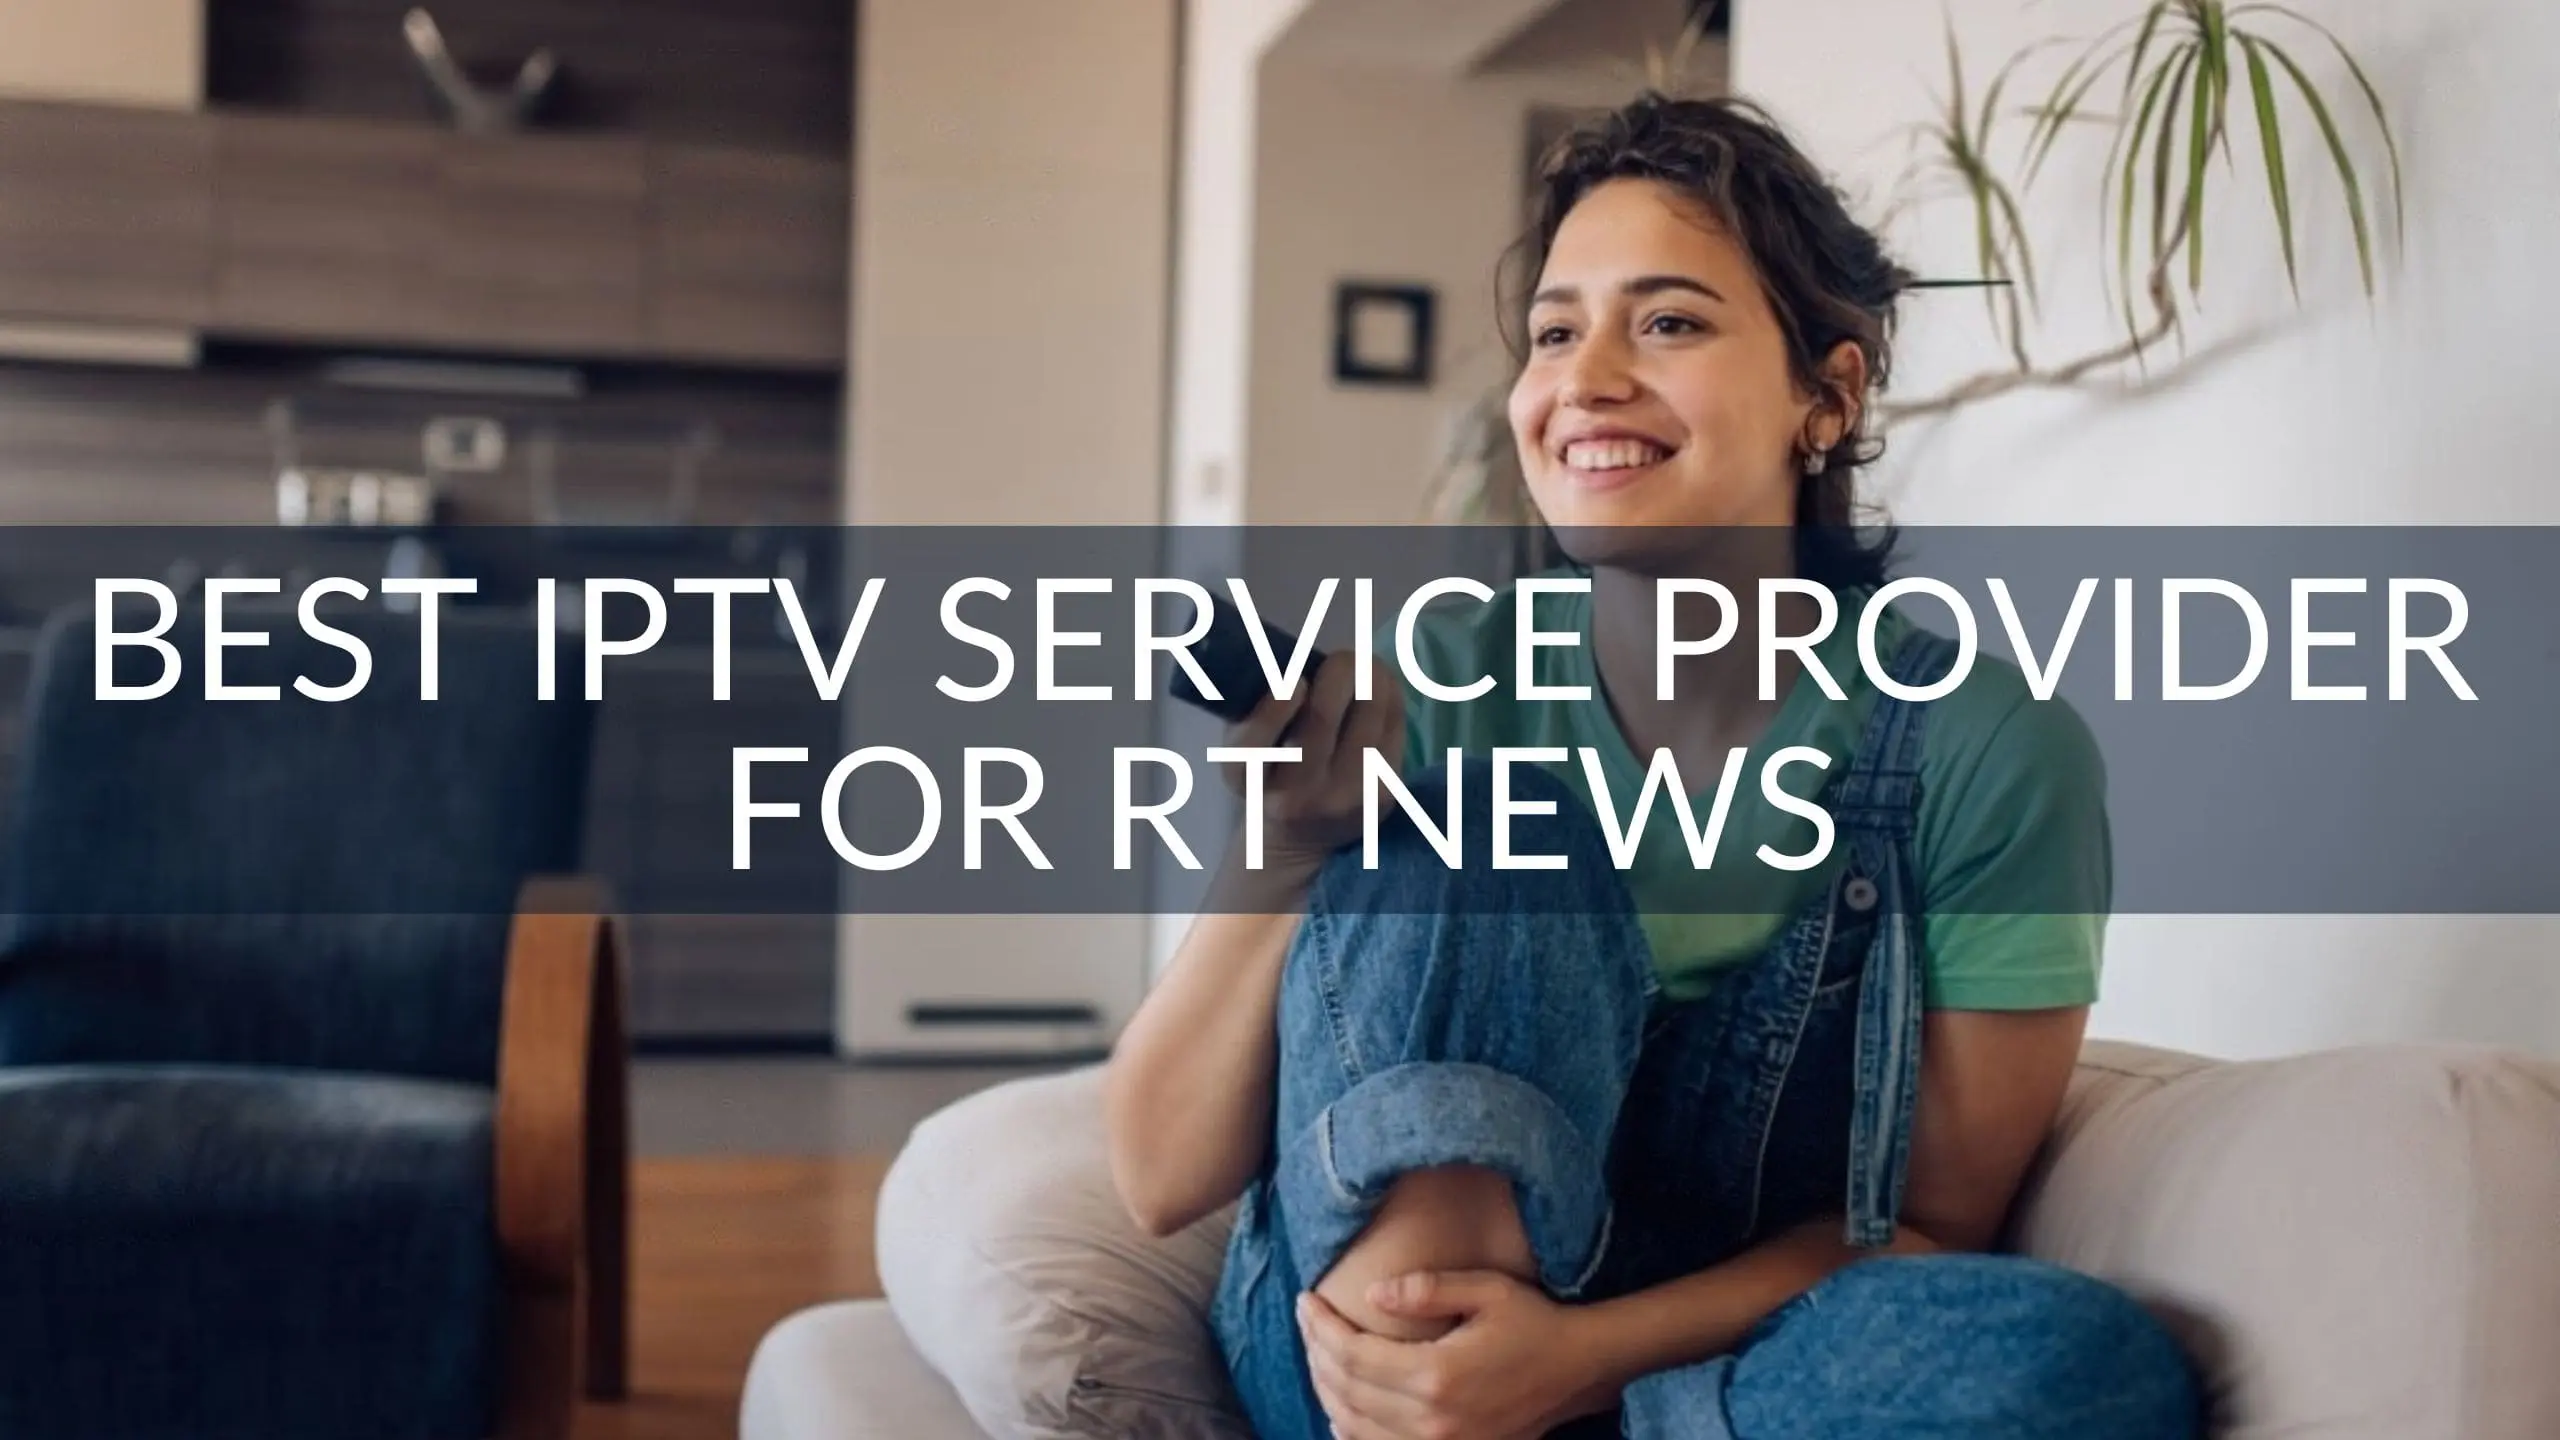 Best IPTV Service Provider for RT News